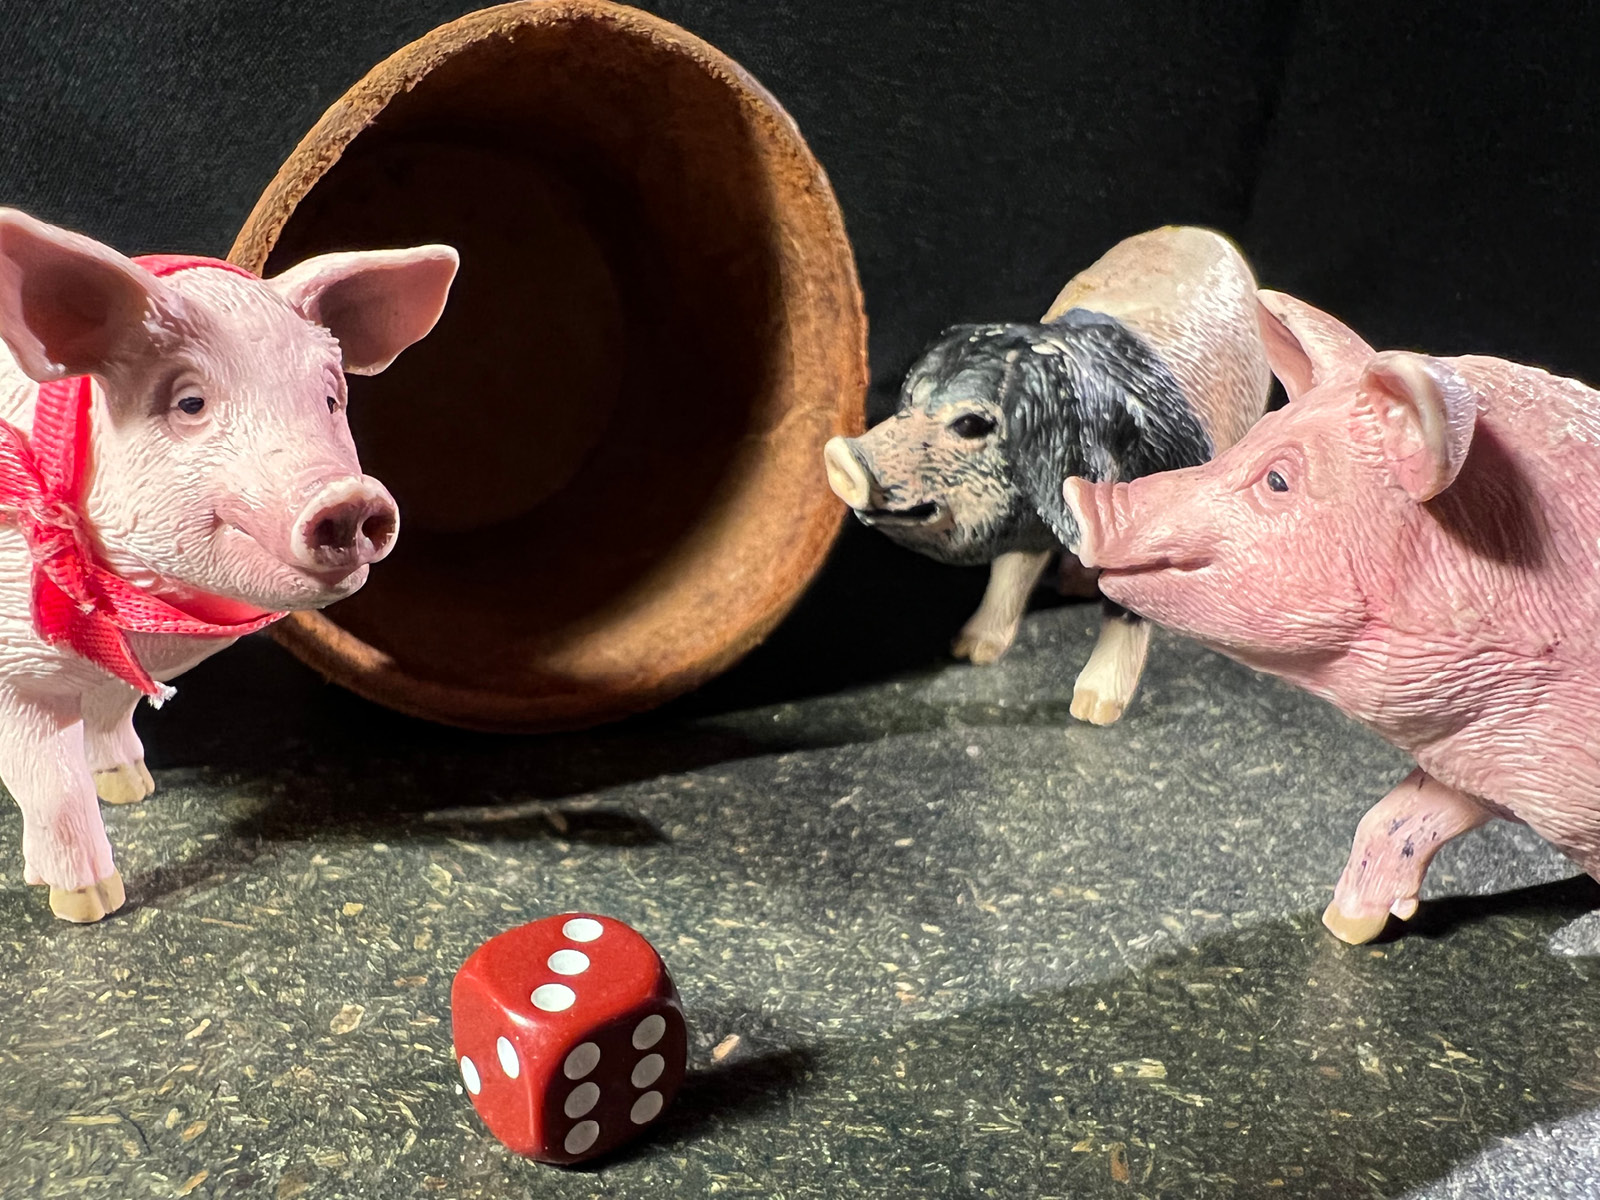 Die Figuren von drei Schweinchen, zwei rosa, eins braun mit Schlappohren umringen einen Würfel. Im Hintergrund liegt ein Lederbecher.